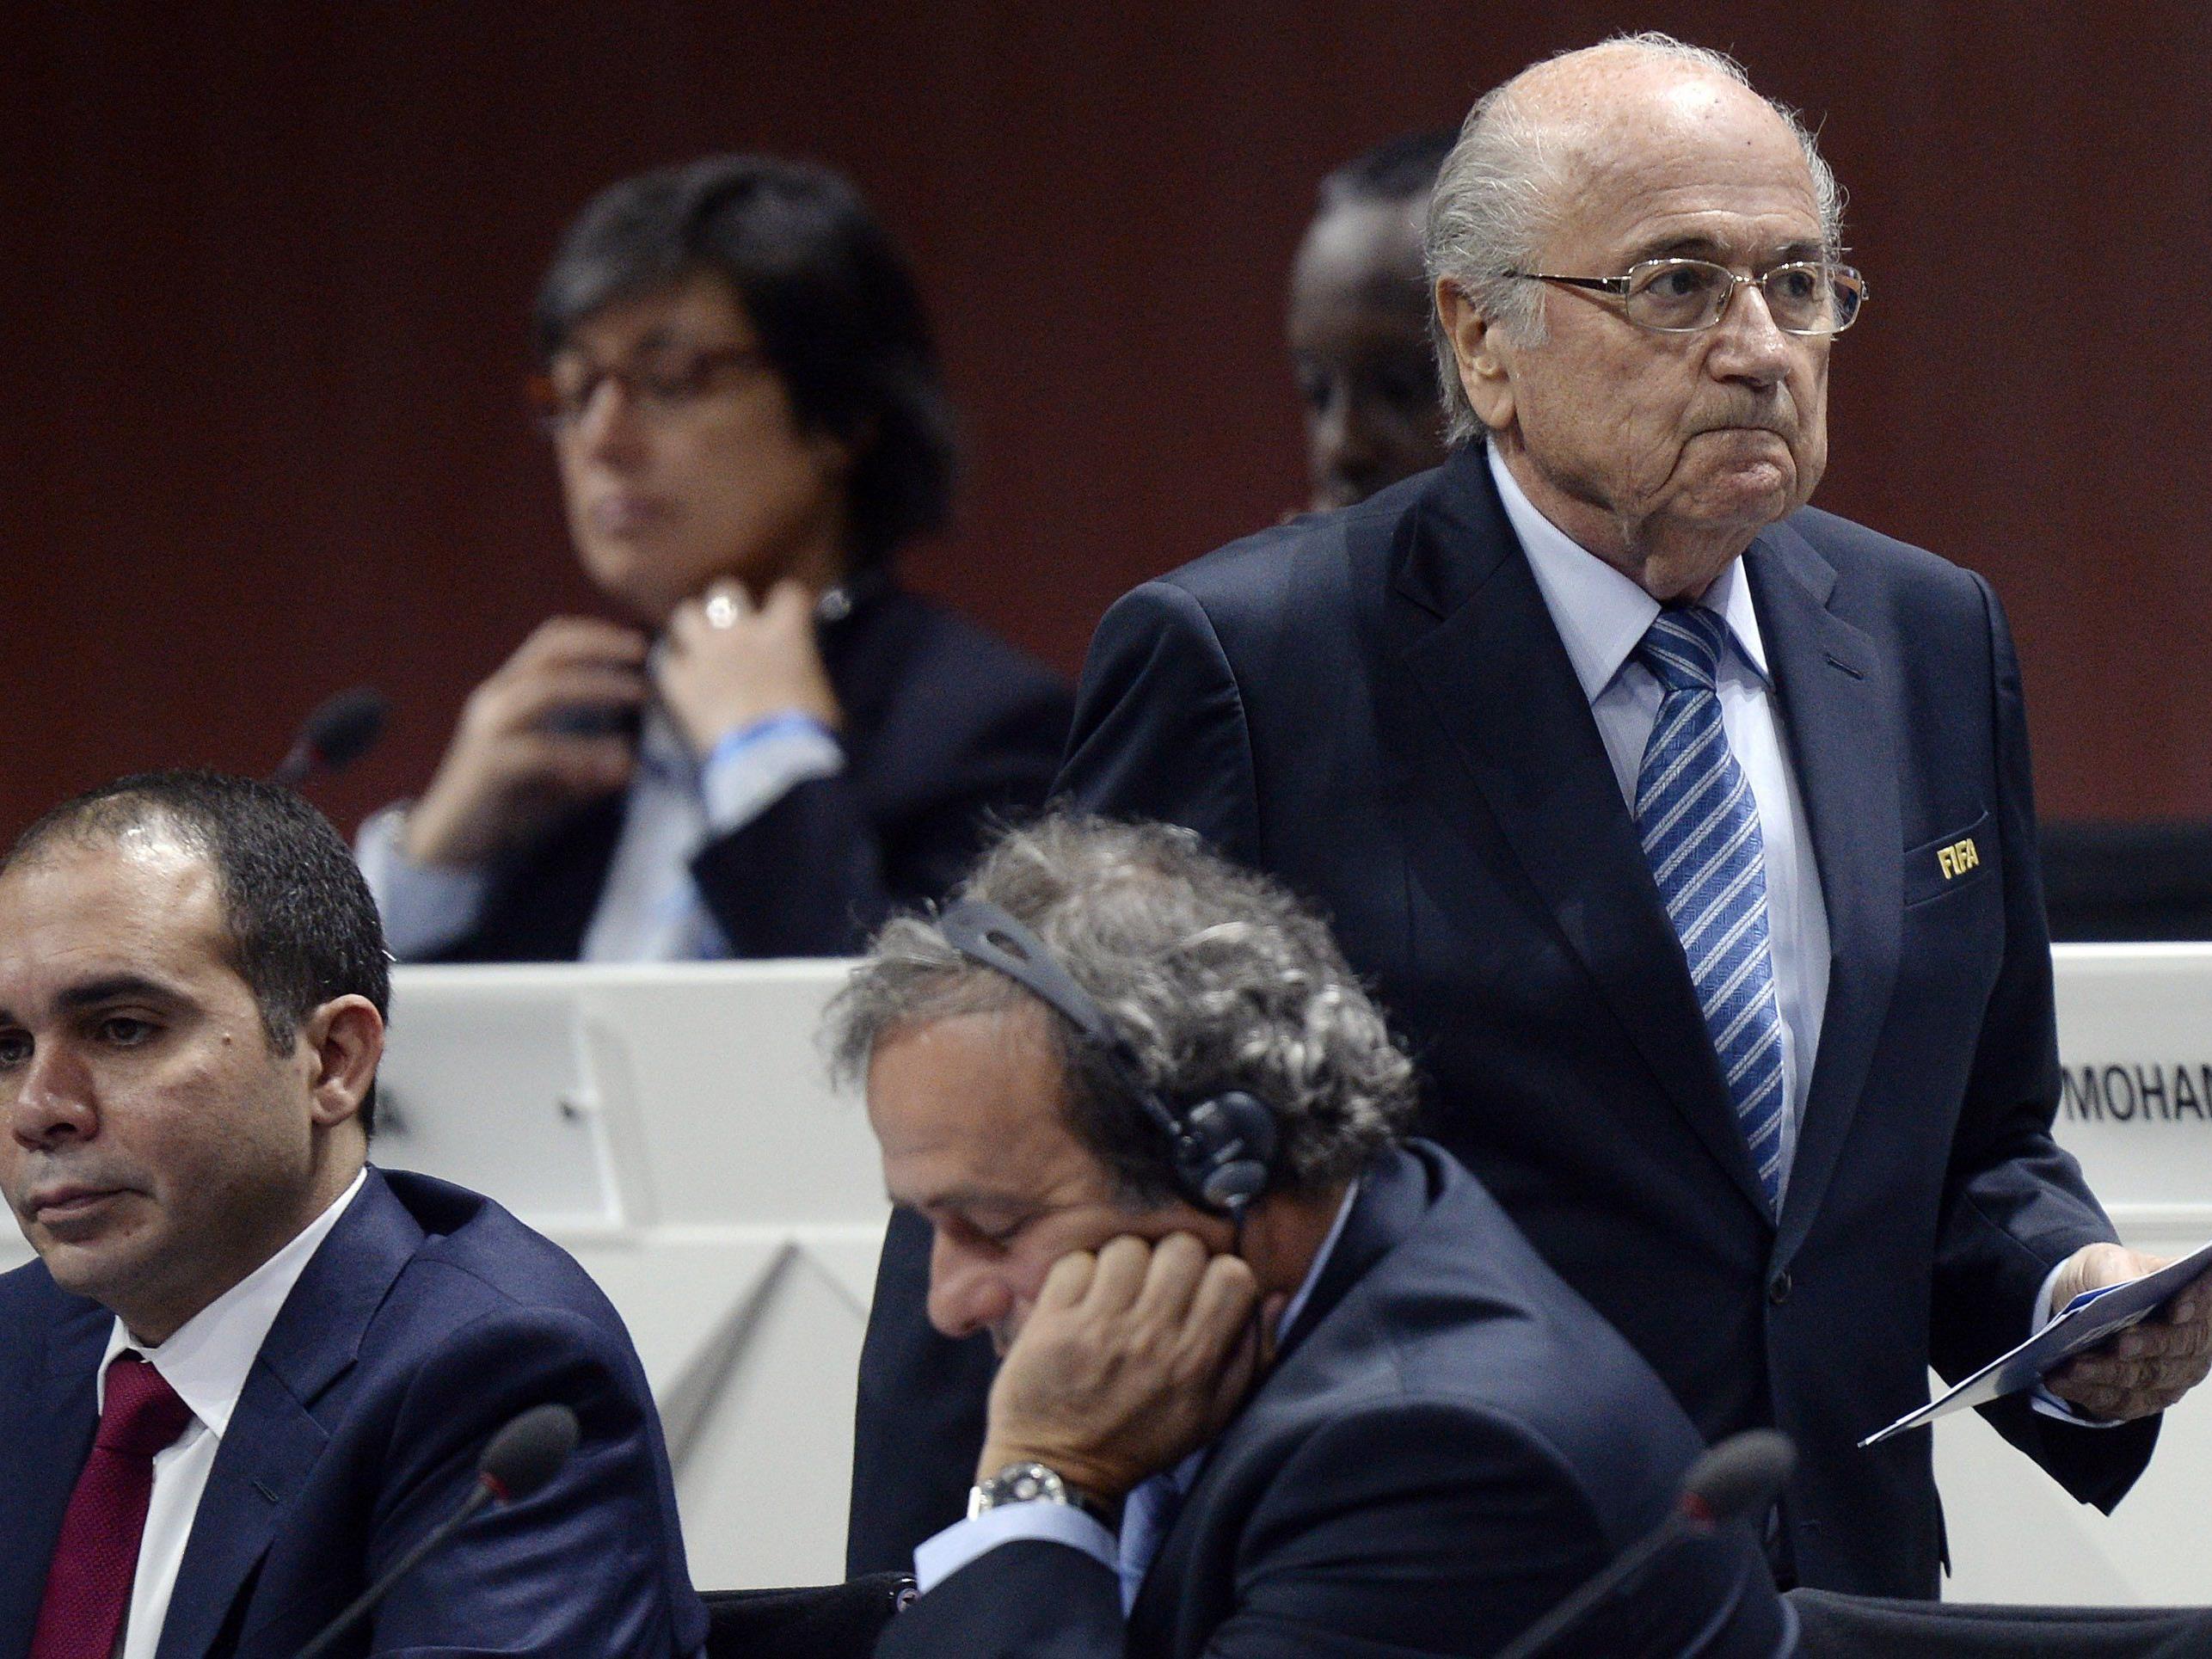 Strafverfahren gegen Blatter eröffnet - Auch Platini im Visier